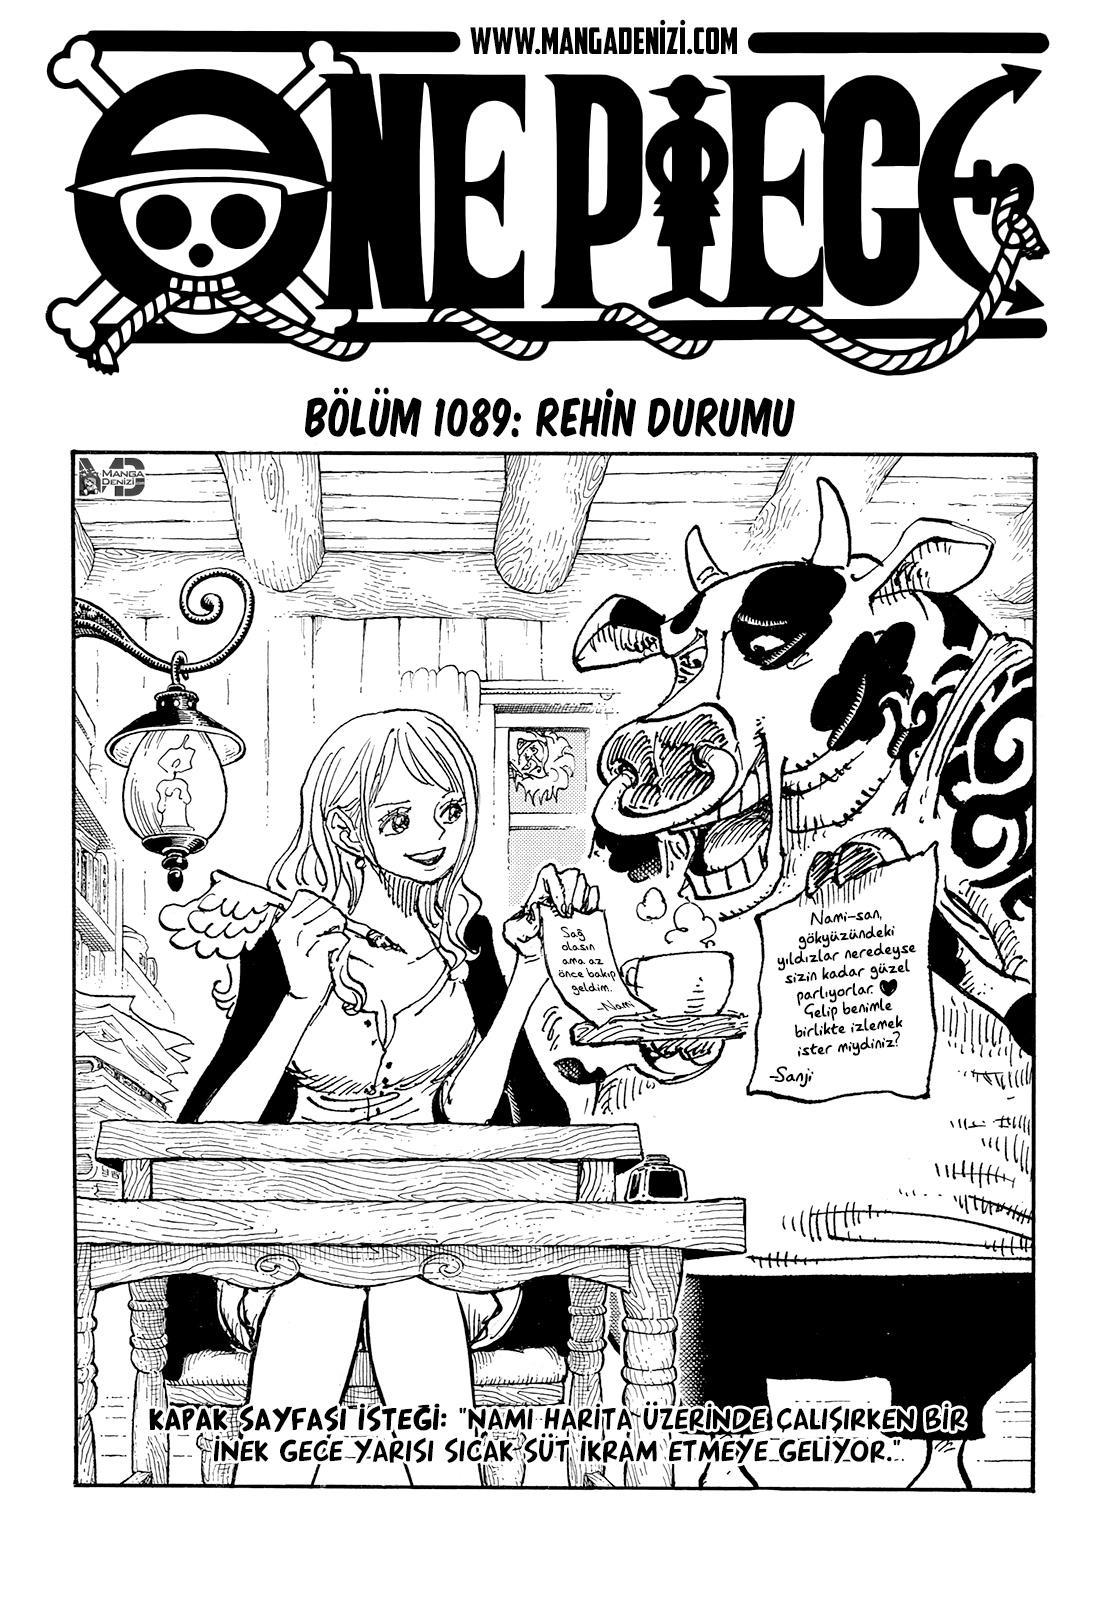 One Piece mangasının 1089 bölümünün 2. sayfasını okuyorsunuz.